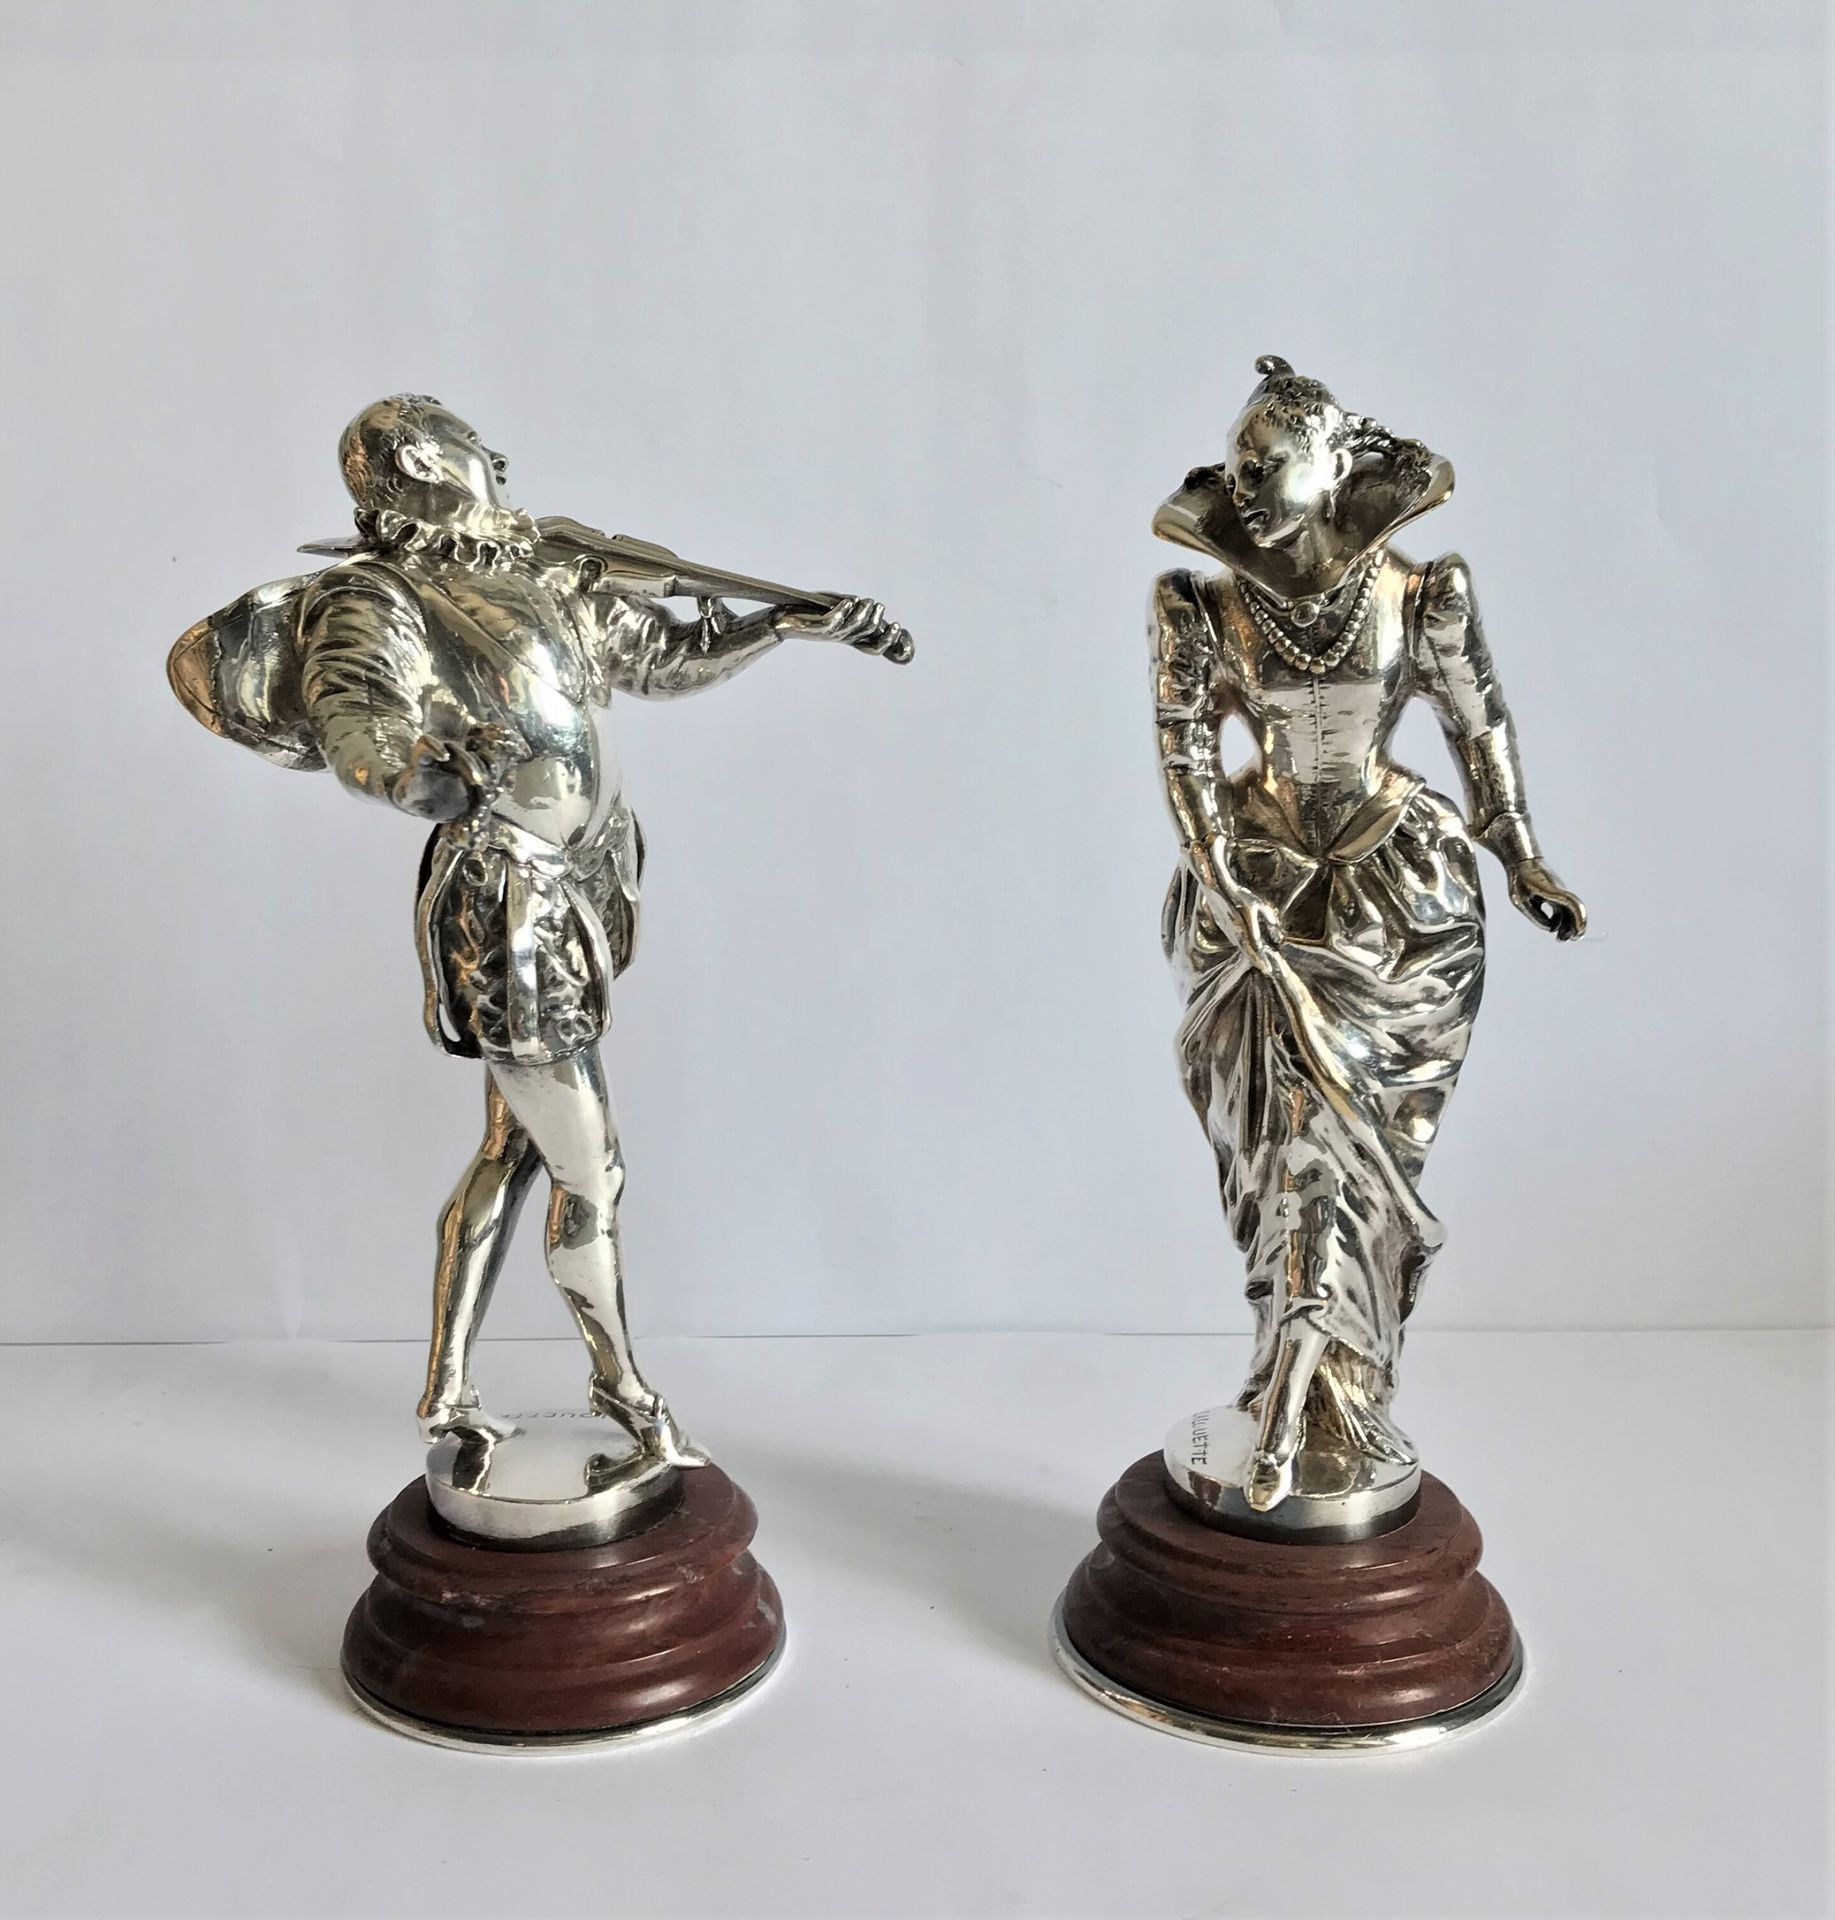 LALOUETTE 奥古斯特-路易斯-拉鲁瓦特 (1826 - 1883)

17世纪风格的音乐家和舞蹈家

银色青铜雕像一对

在露台上签名

大理石底座

&hellip;